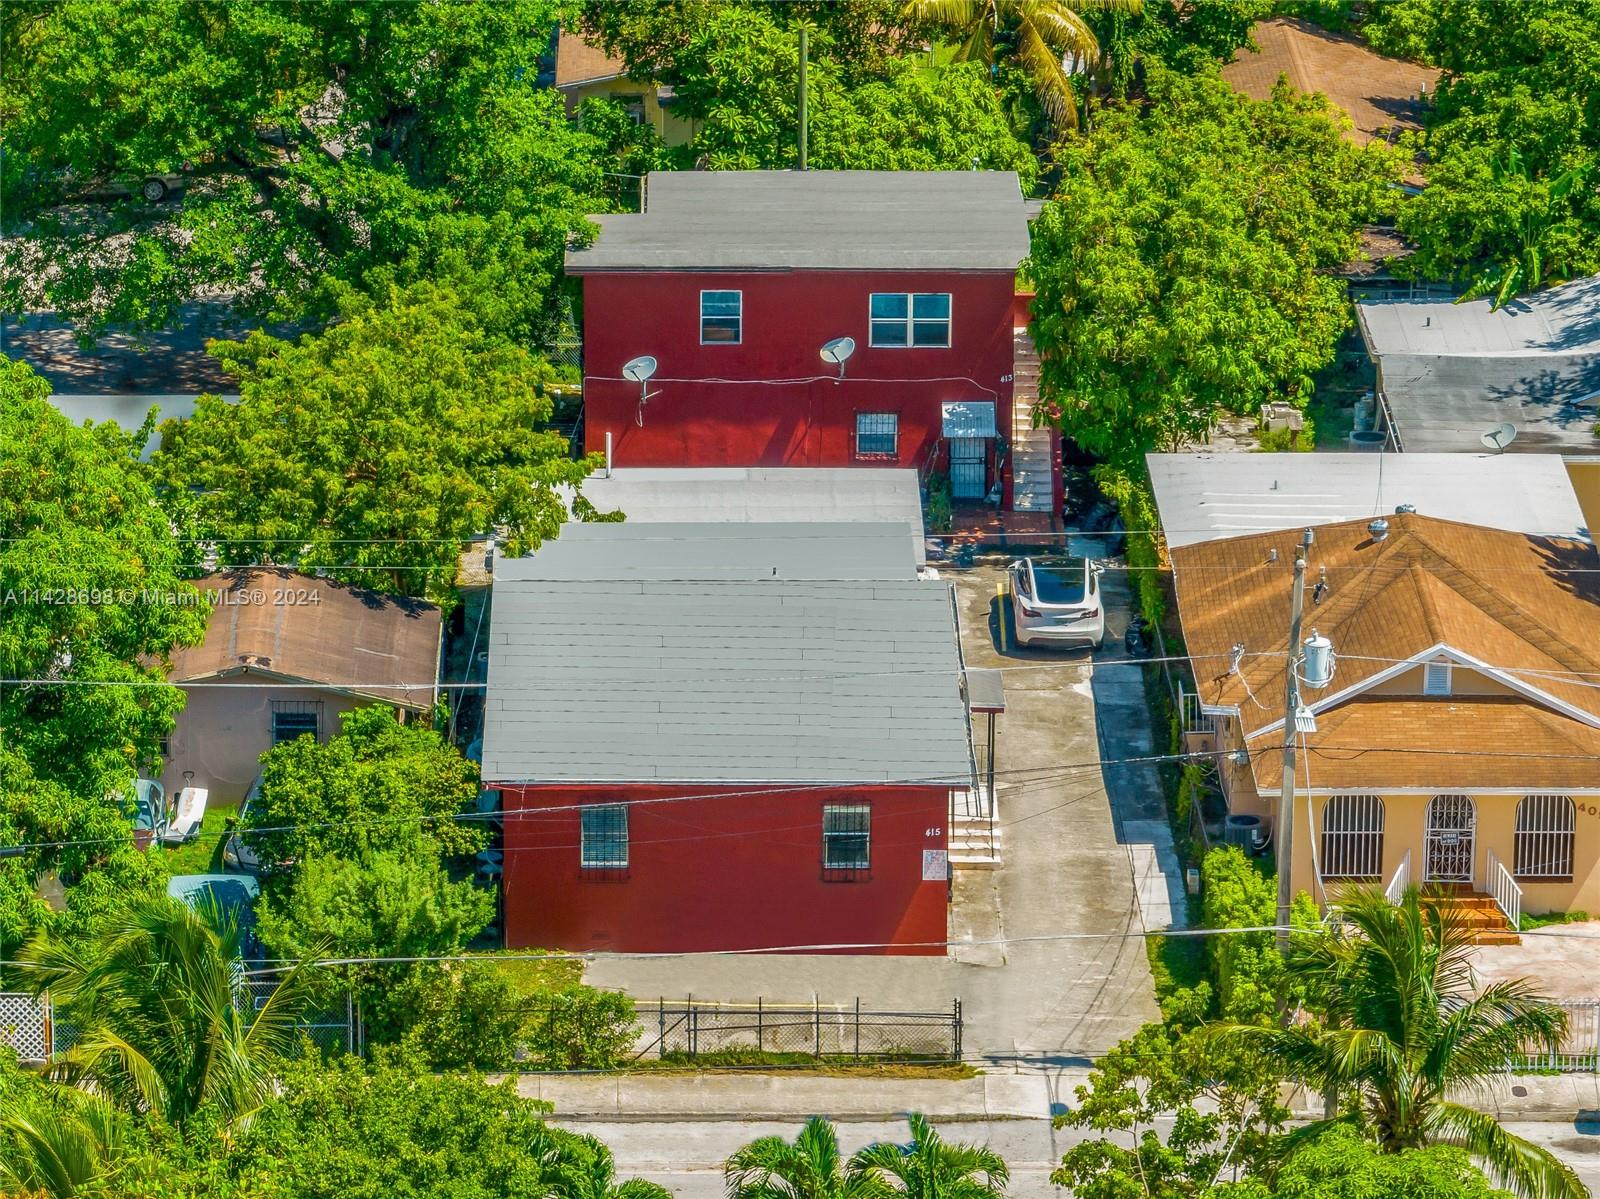 Rental Property at 413 Nw 33rd St St, Miami, Broward County, Florida -  - $1,500,000 MO.